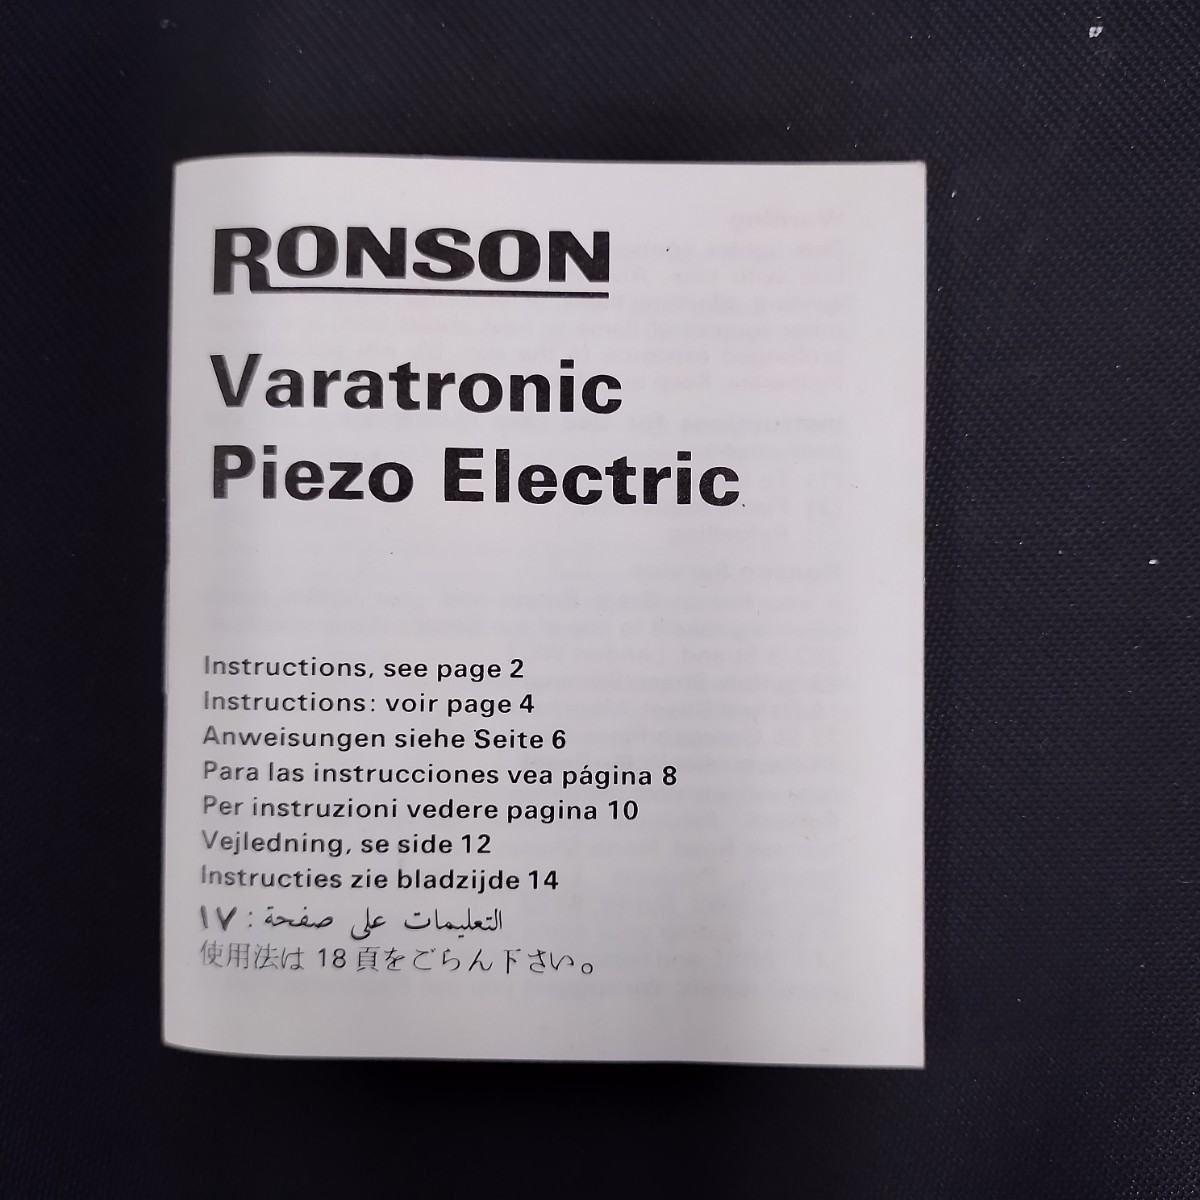 NR919 RONSON ライター ガスライター 喫煙具 シルバー ケース付き Varatronic Piezo Electric ロンソン _画像9